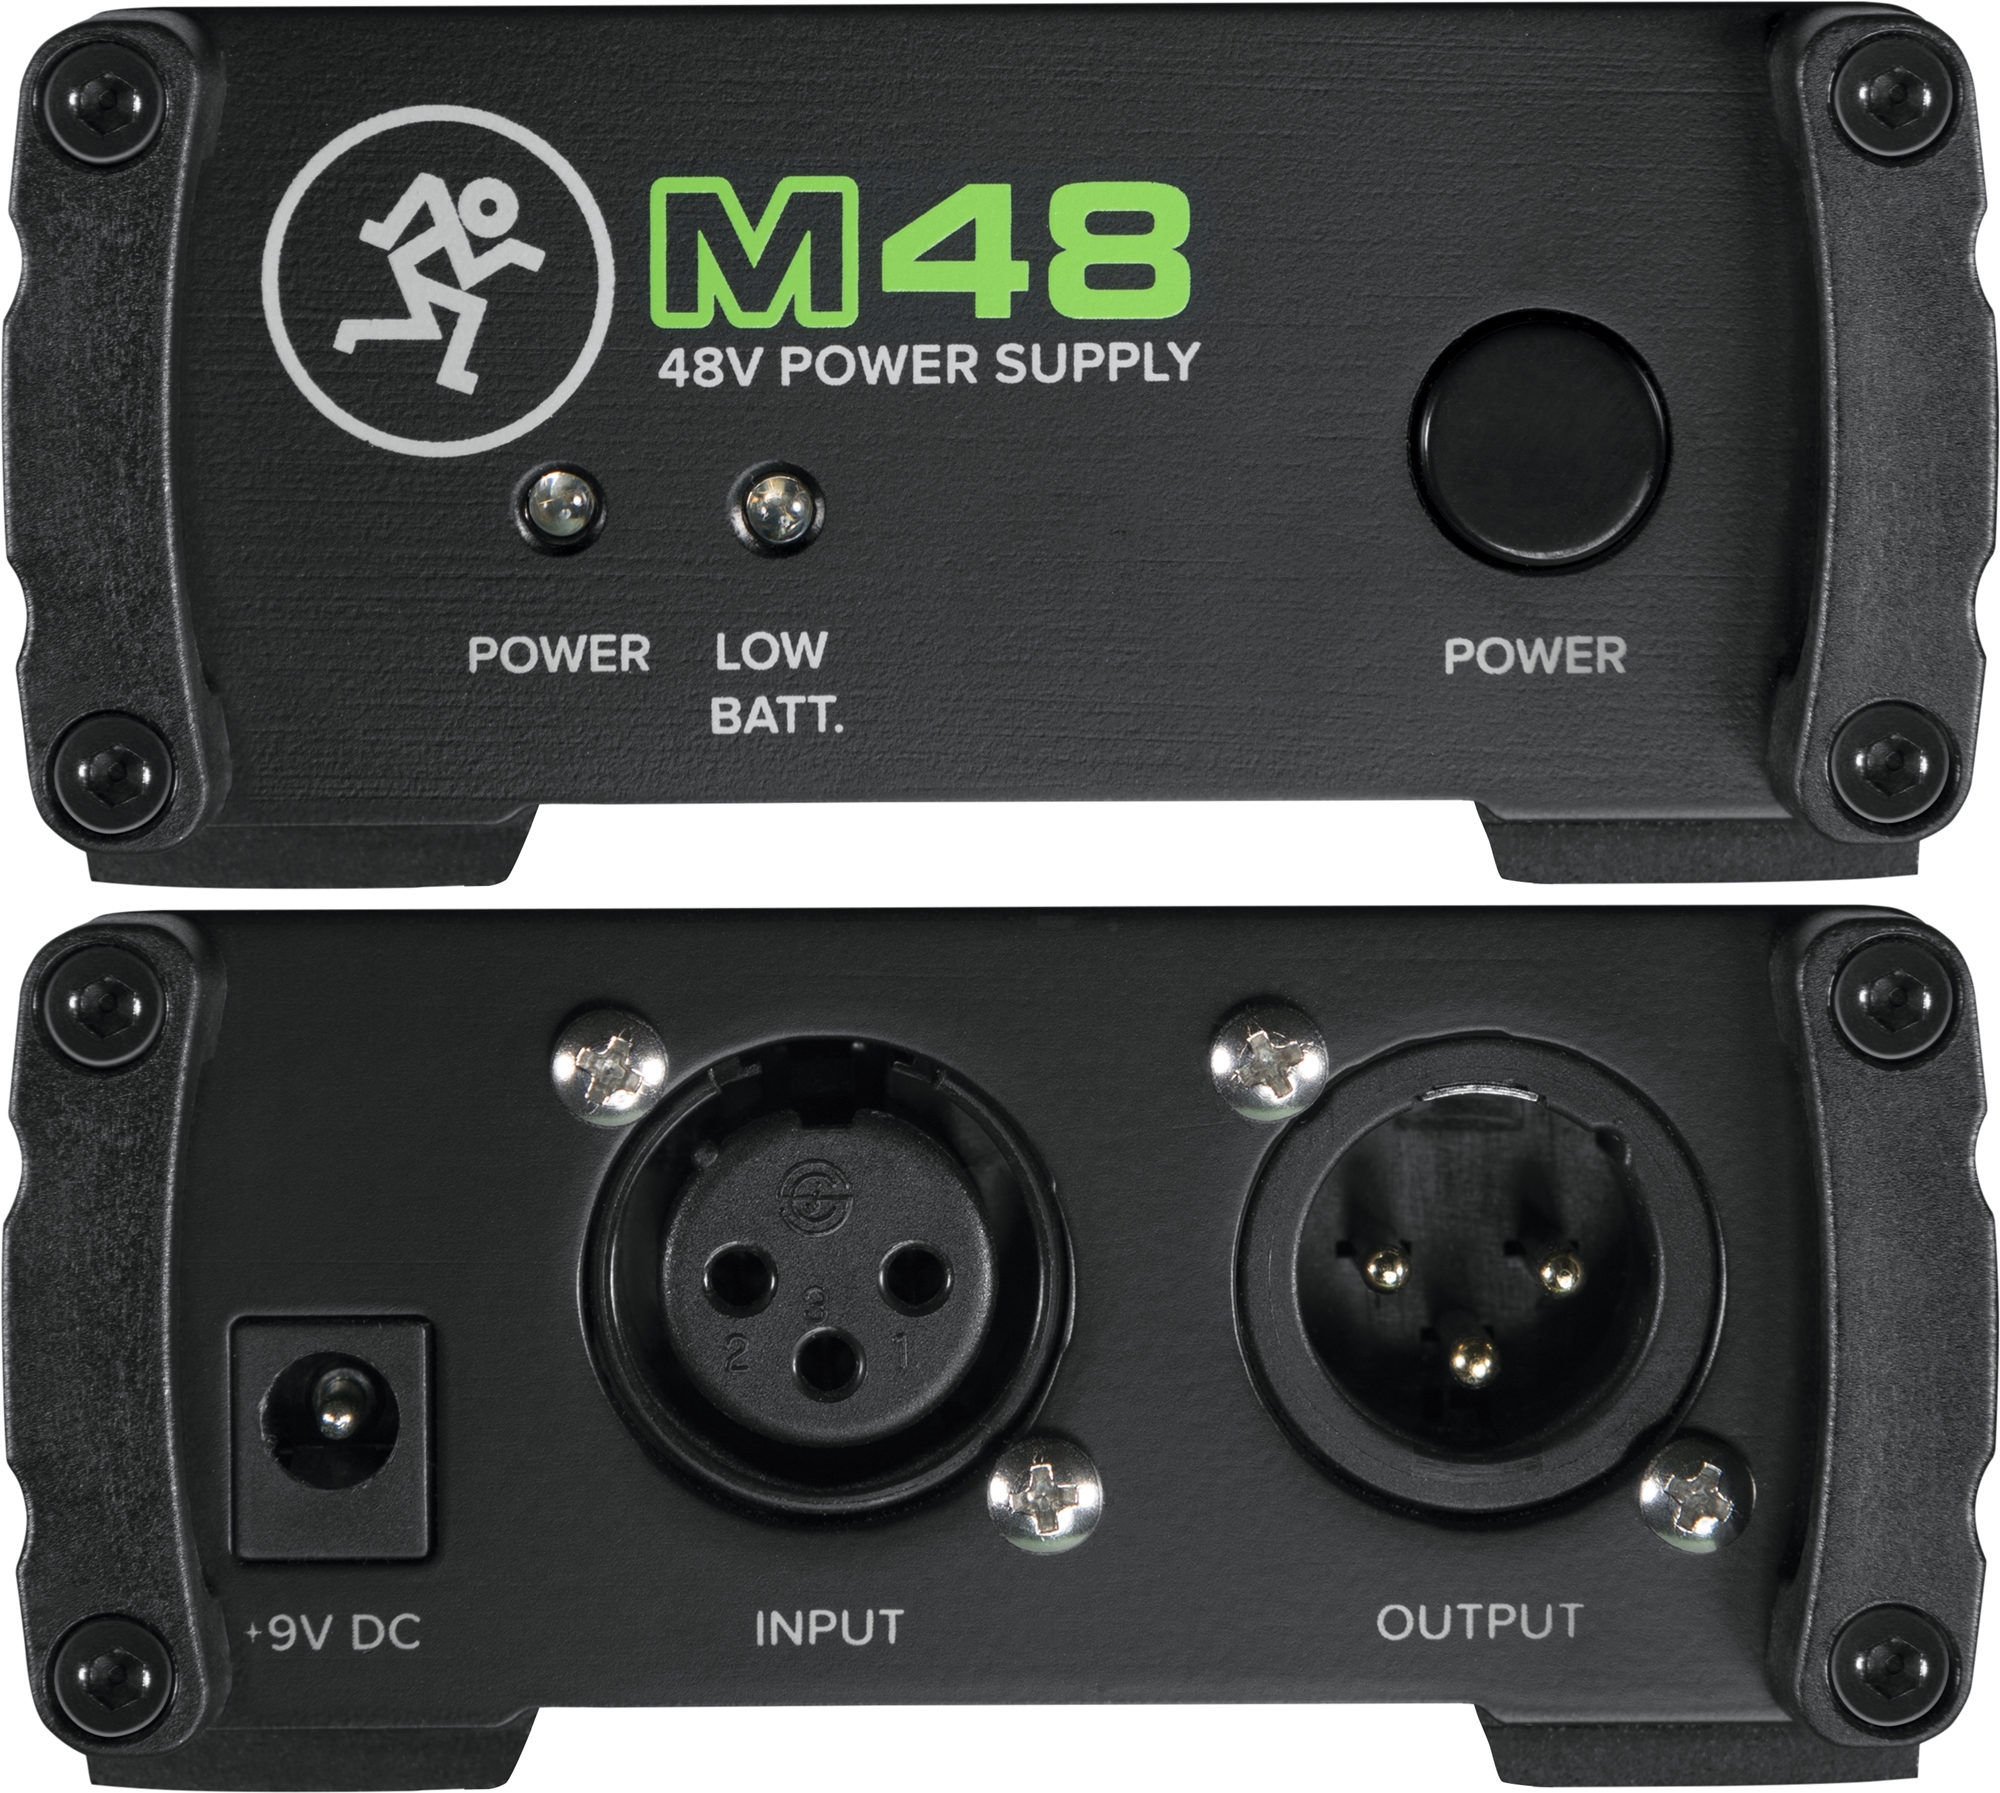 まもなく発売開始、48Vファンタム電源「M48」よくあるご質問 » Mackie Japan News